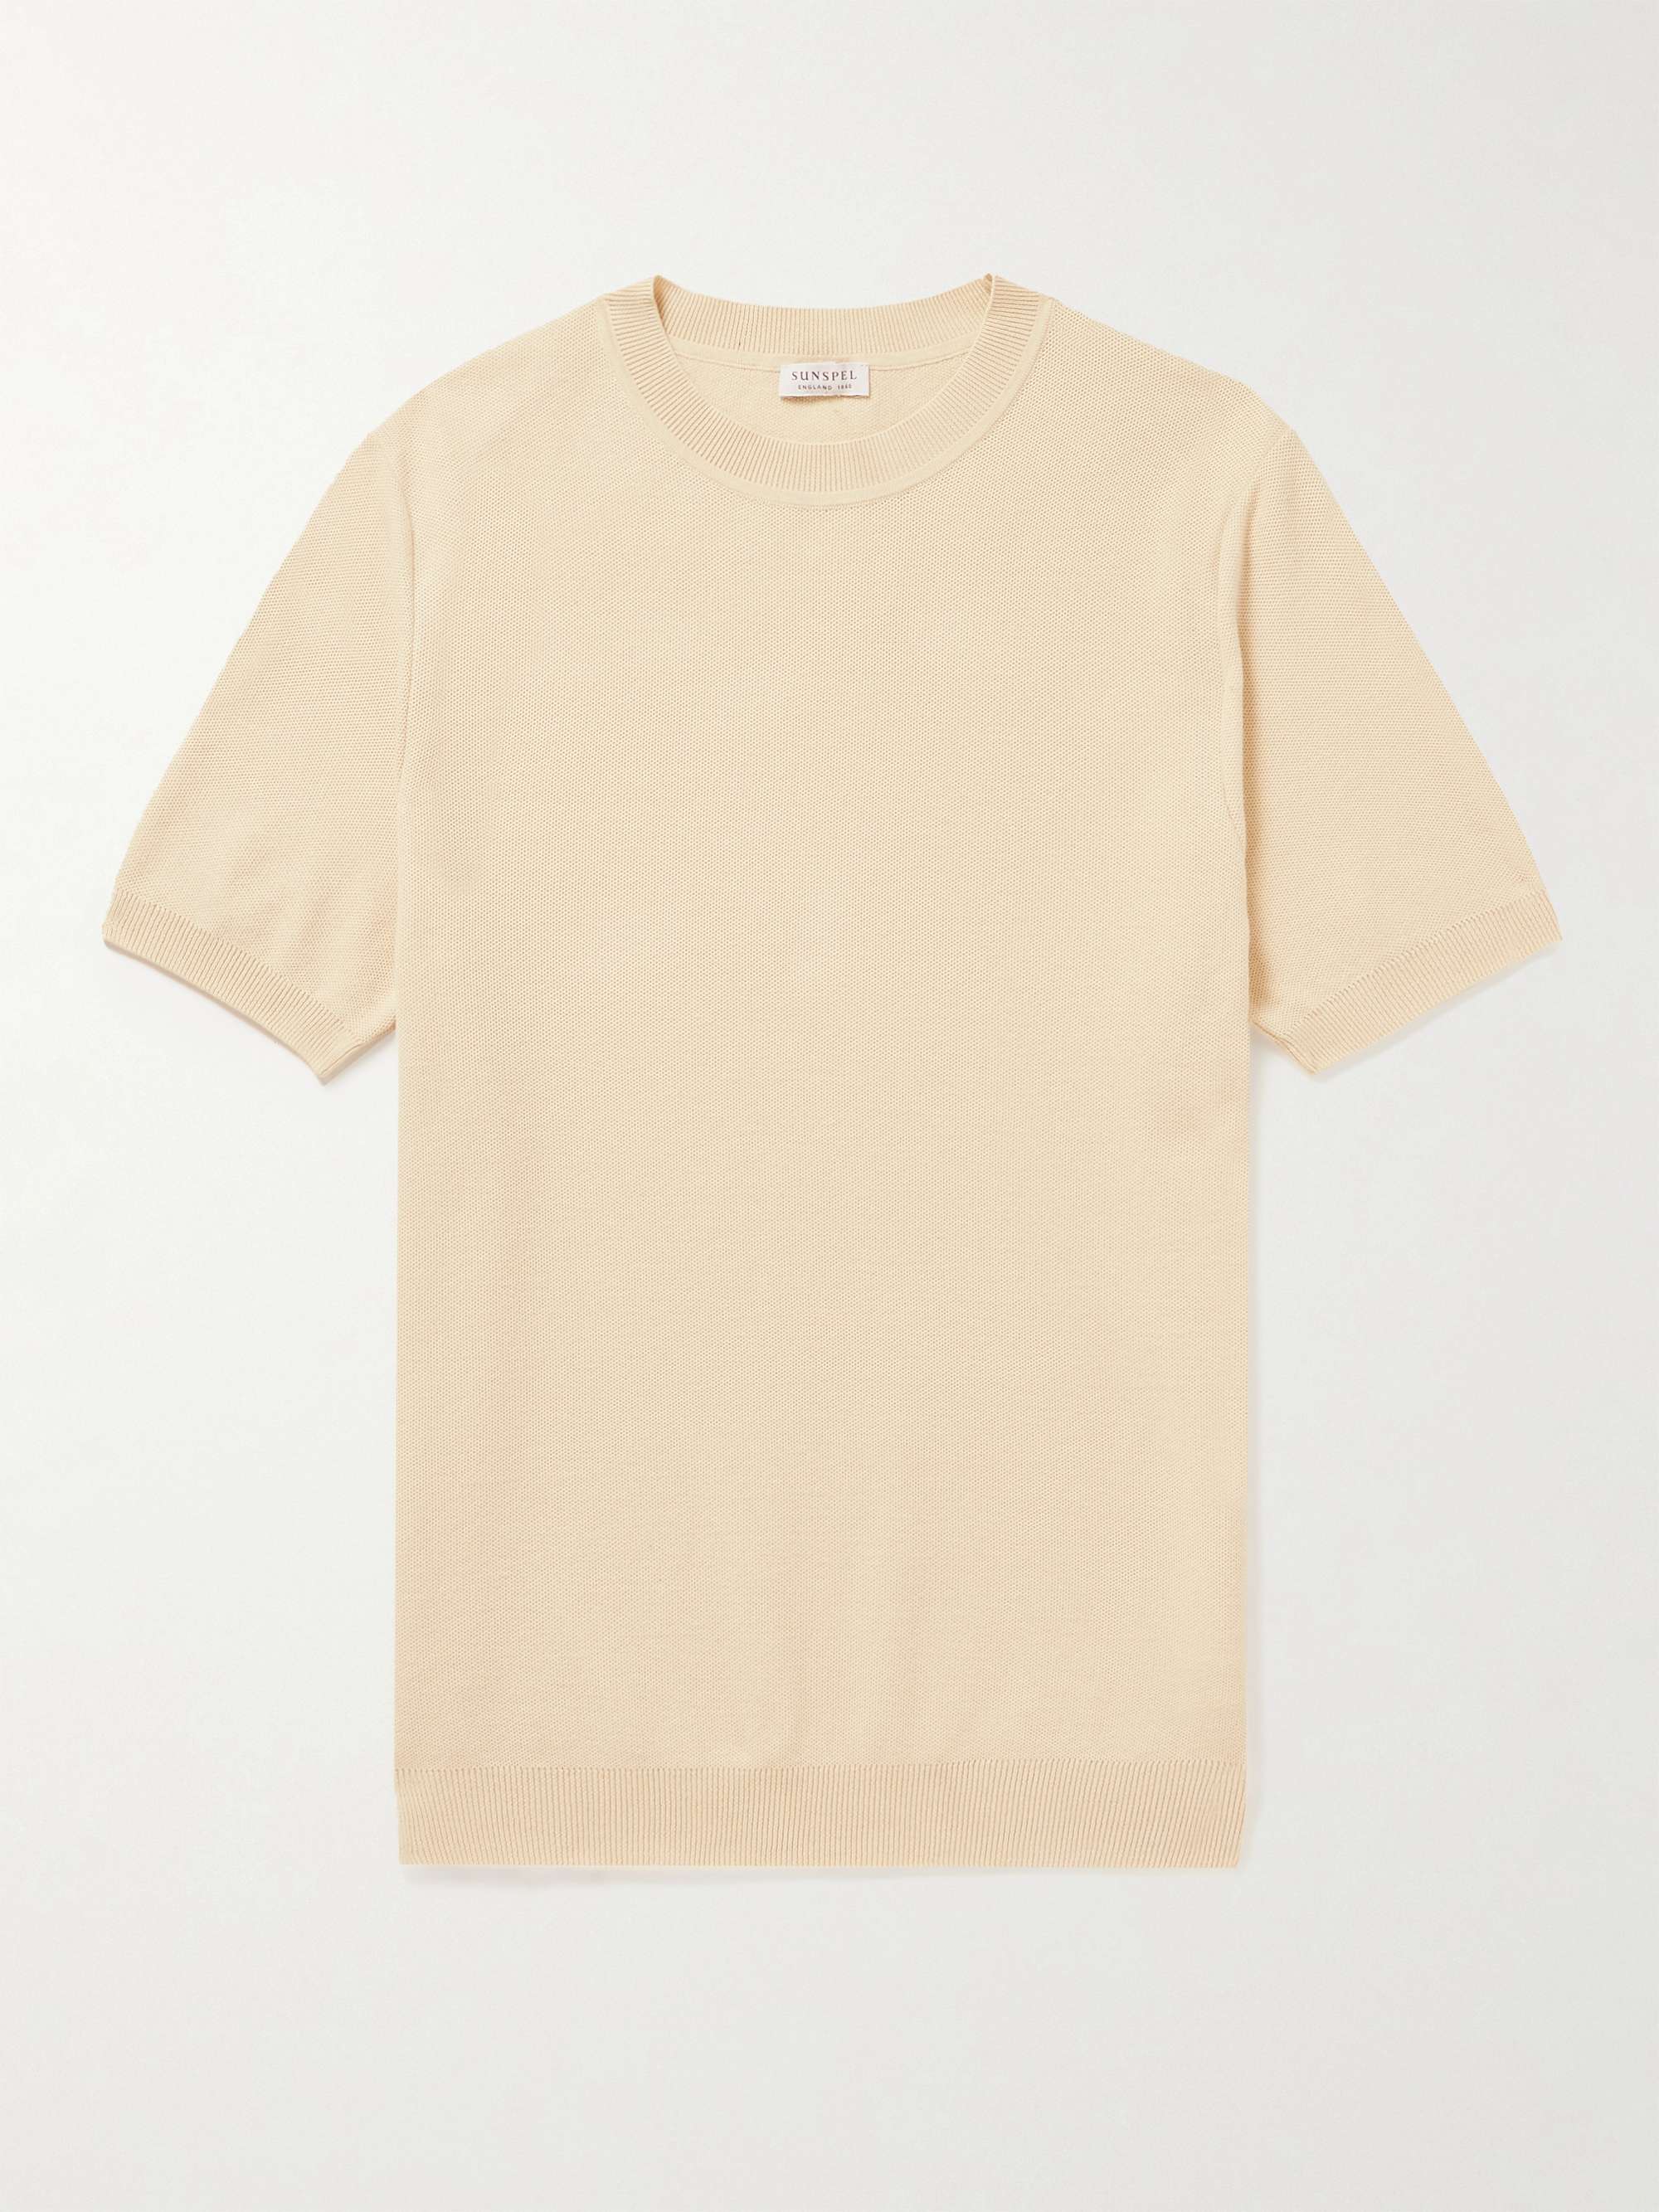 SUNSPEL Knitted Cotton T-Shirt